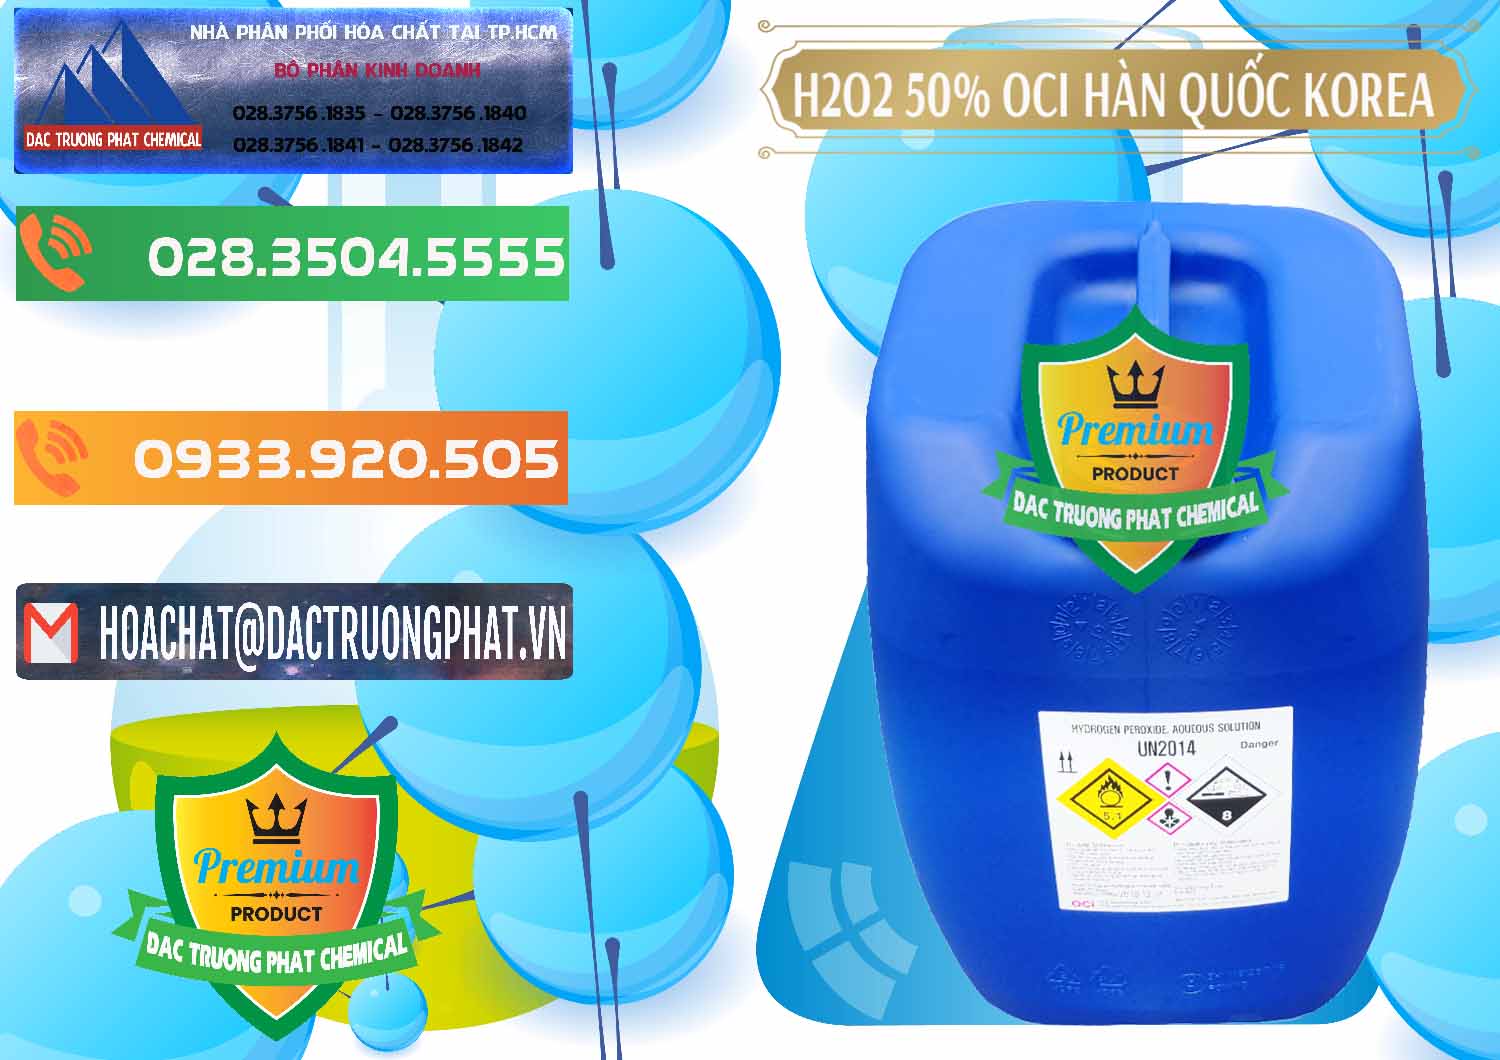 Cty chuyên kinh doanh - bán H2O2 - Hydrogen Peroxide 50% OCI Hàn Quốc Korea - 0075 - Công ty nhập khẩu _ phân phối hóa chất tại TP.HCM - hoachatxulynuoc.com.vn